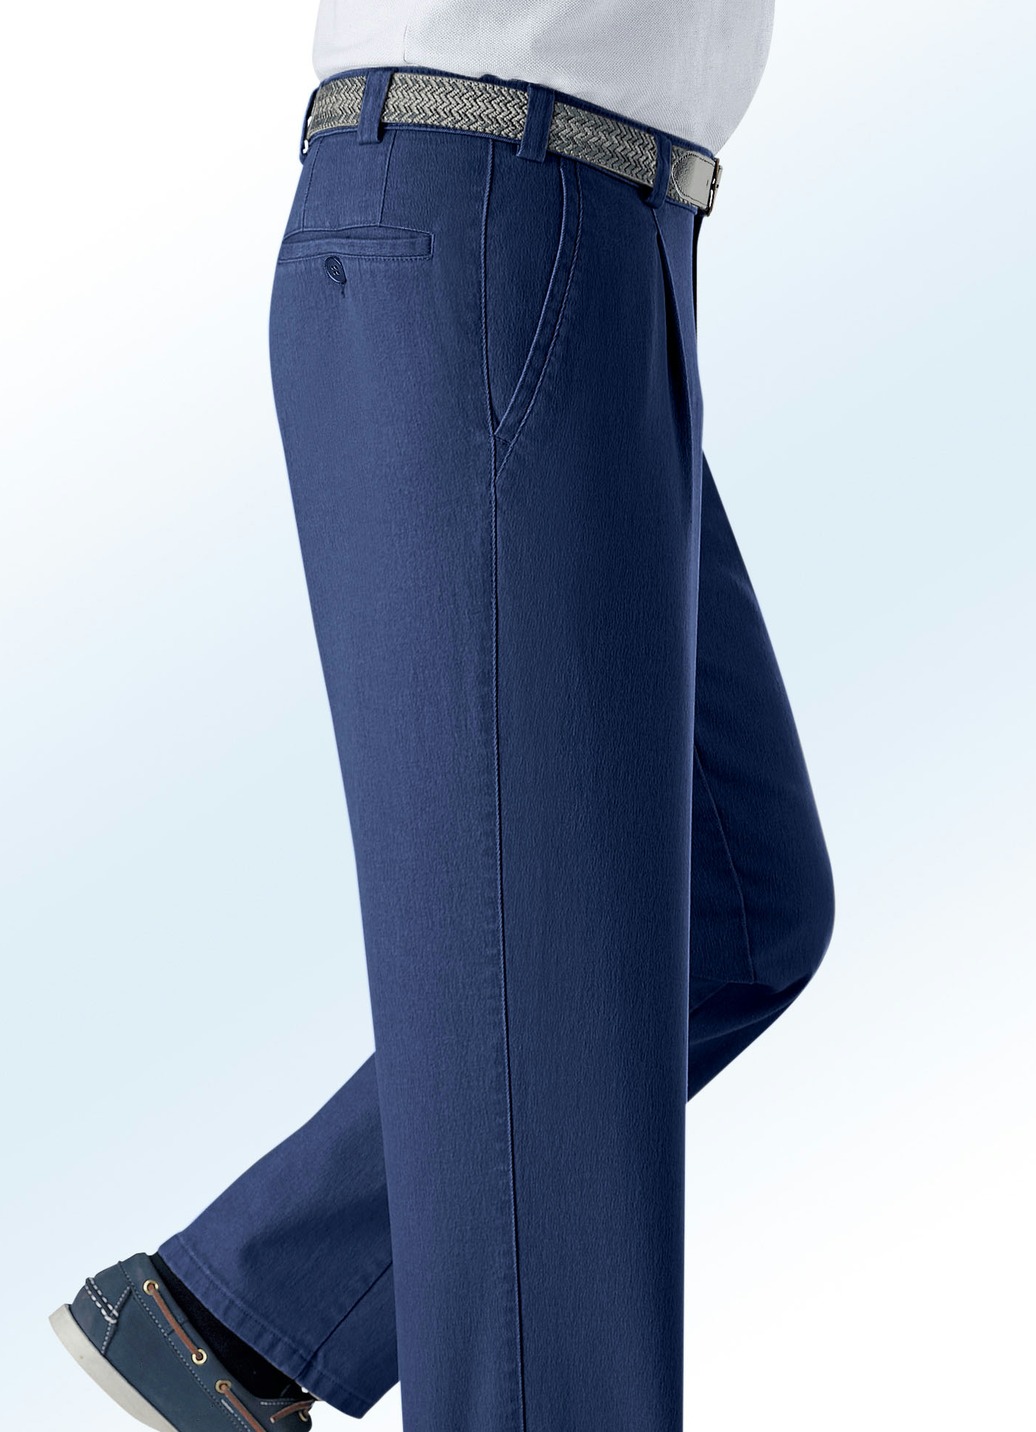 Unterbauch-Jeans mit Gürtel in 3 Farben, Jeansblau, Größe 48 von BADER